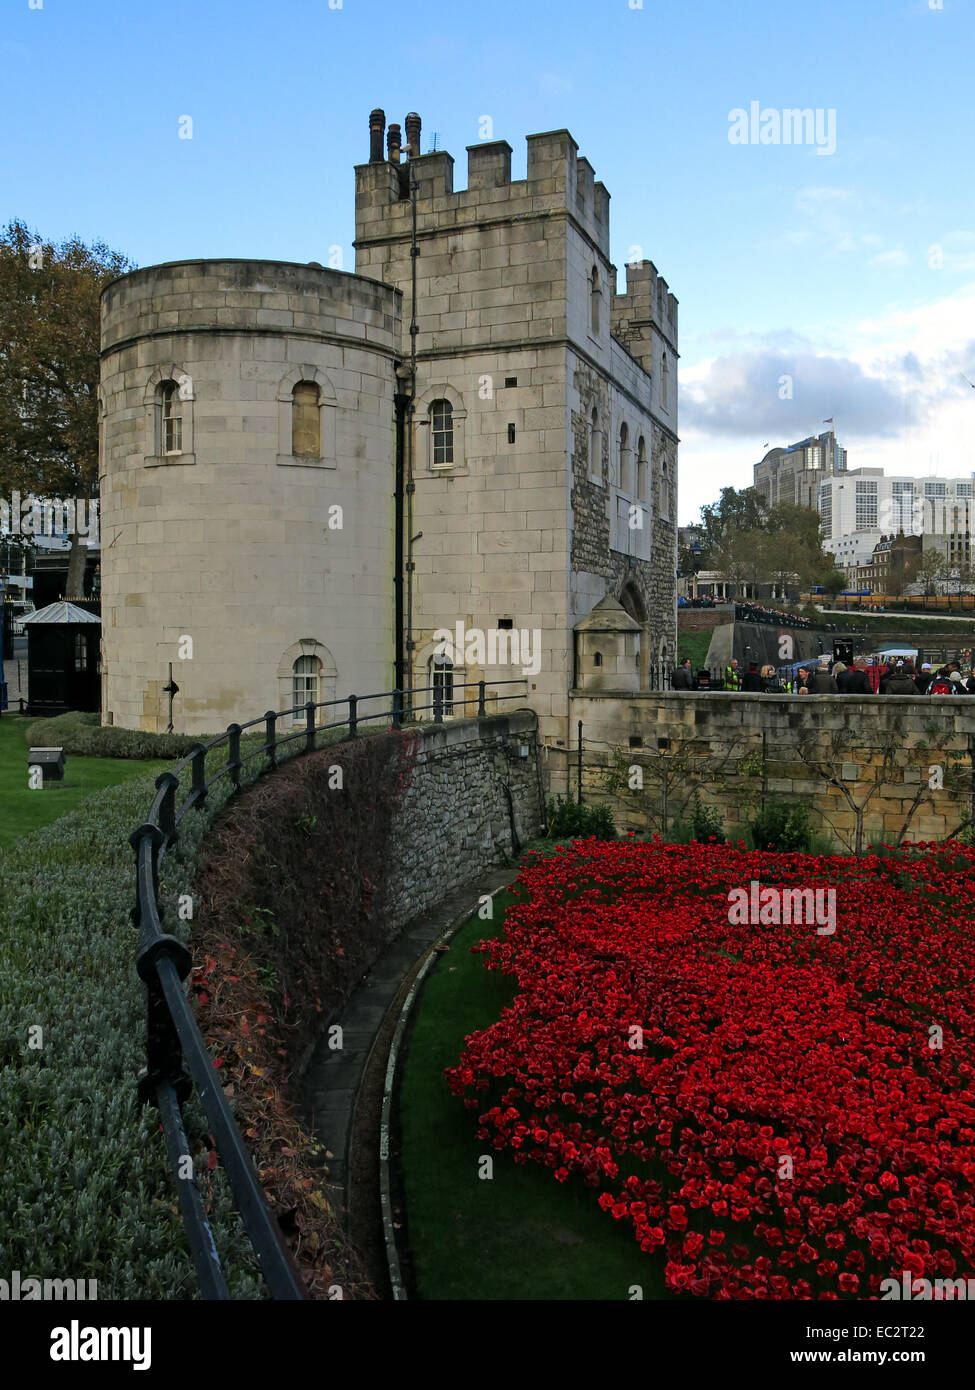 Les terres et les mers de sang ont balayé de coquelicots rouges, au côté ouest de la Tour de Londres, Angleterre Banque D'Images